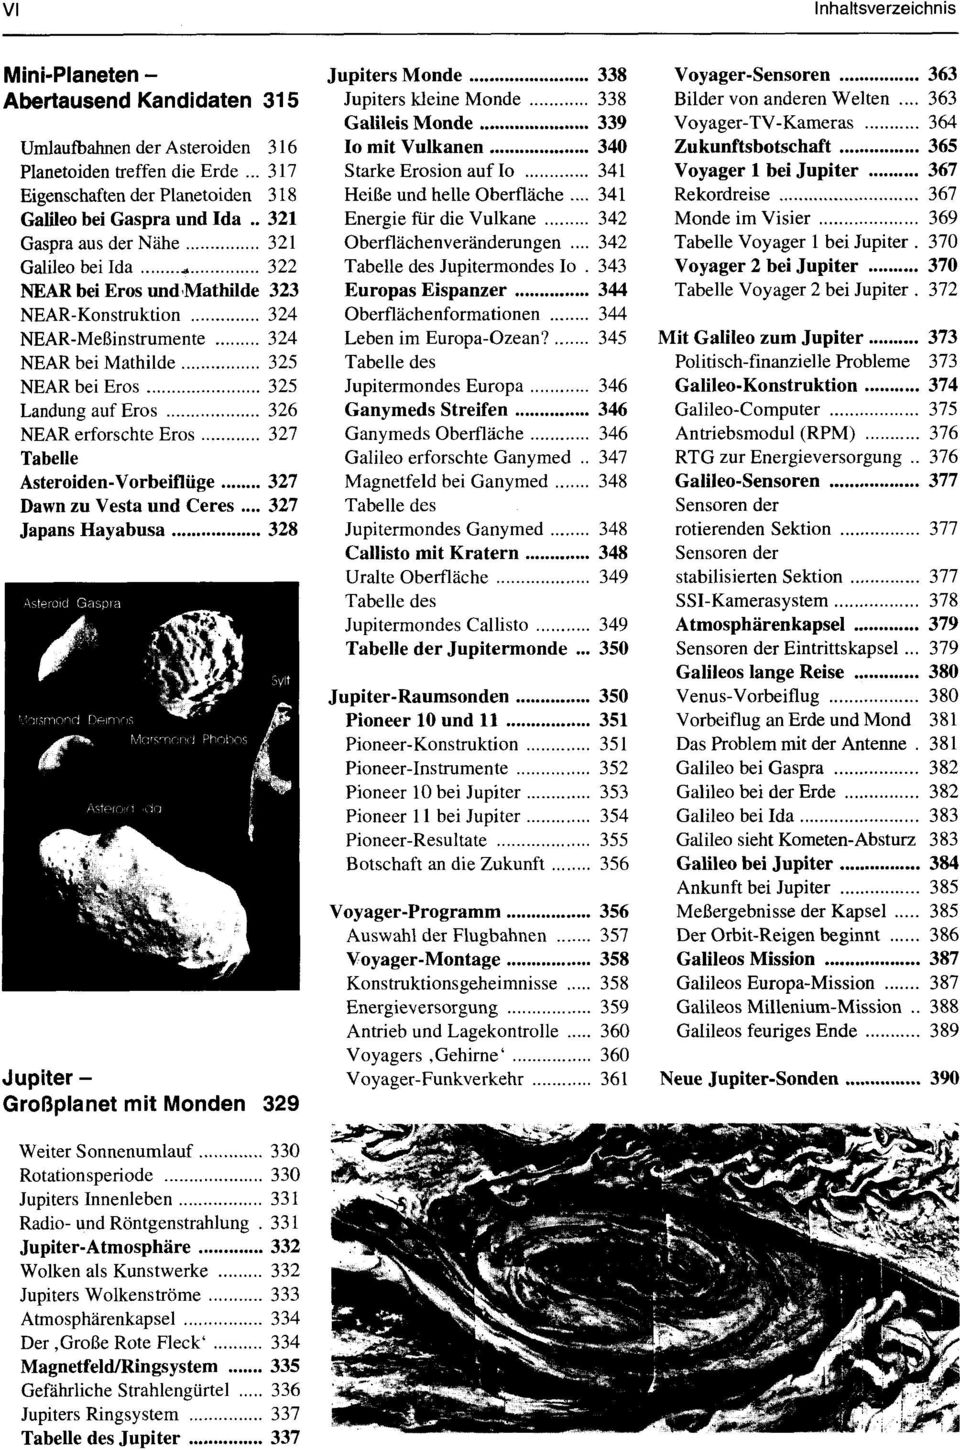 erforschte Eros 327 Tabelle Asteroiden-Vorbeiflüge 327 Dawn zu Vesta und Ceres.